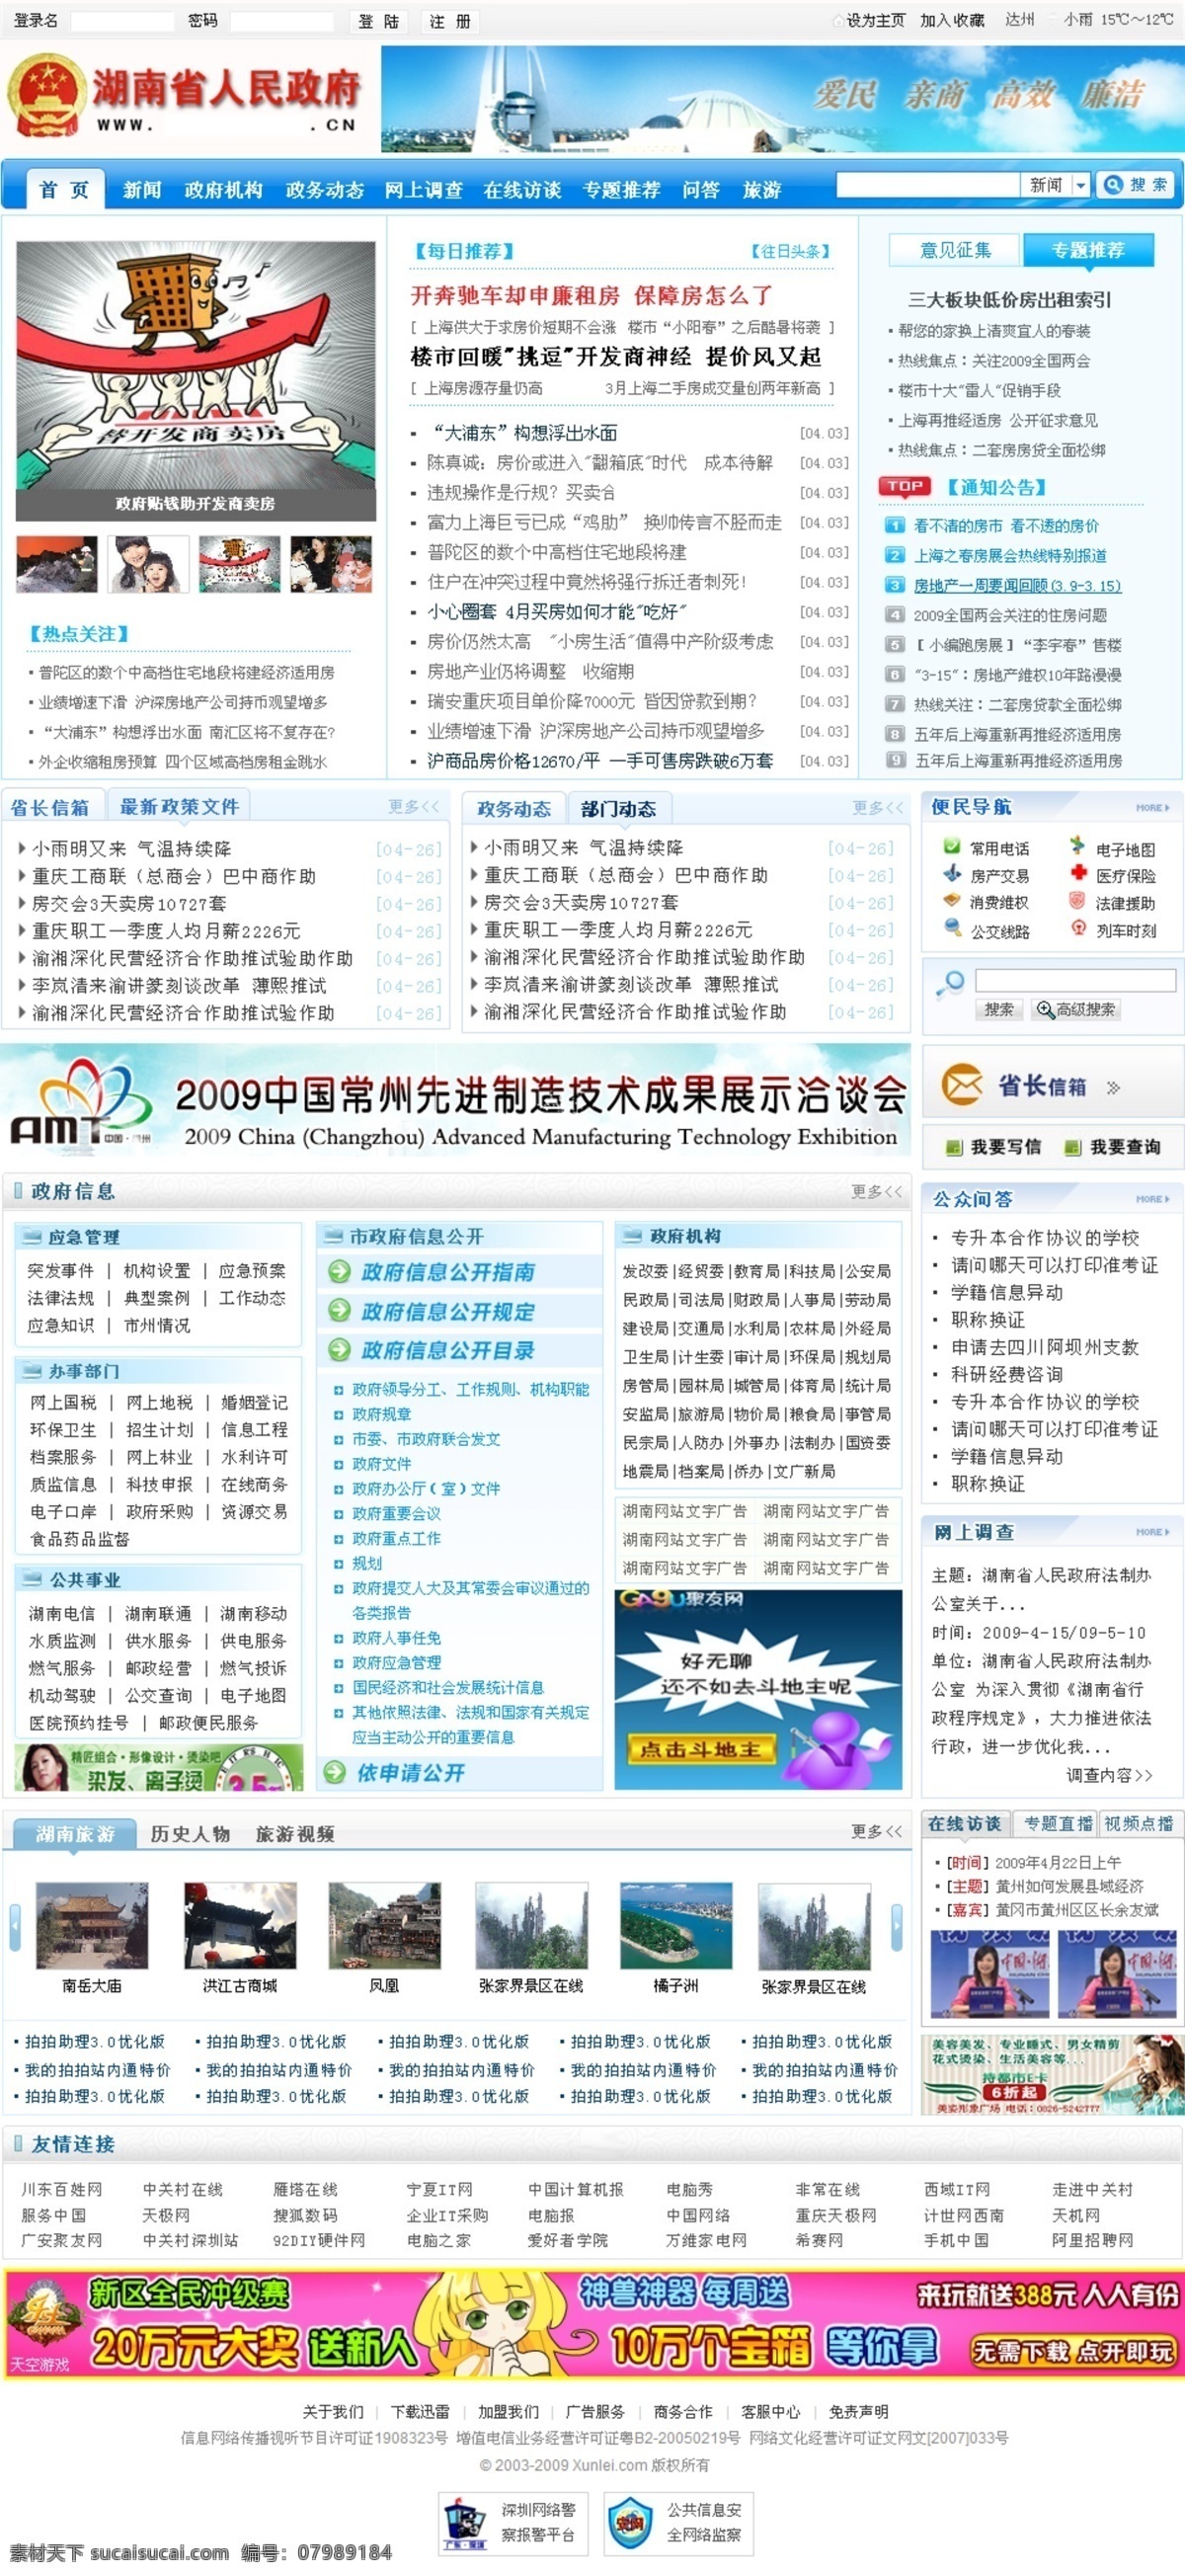 蓝色 政府网站 城市 蓝色模版 中文模板 党政网站 web 界面设计 网页素材 其他网页素材